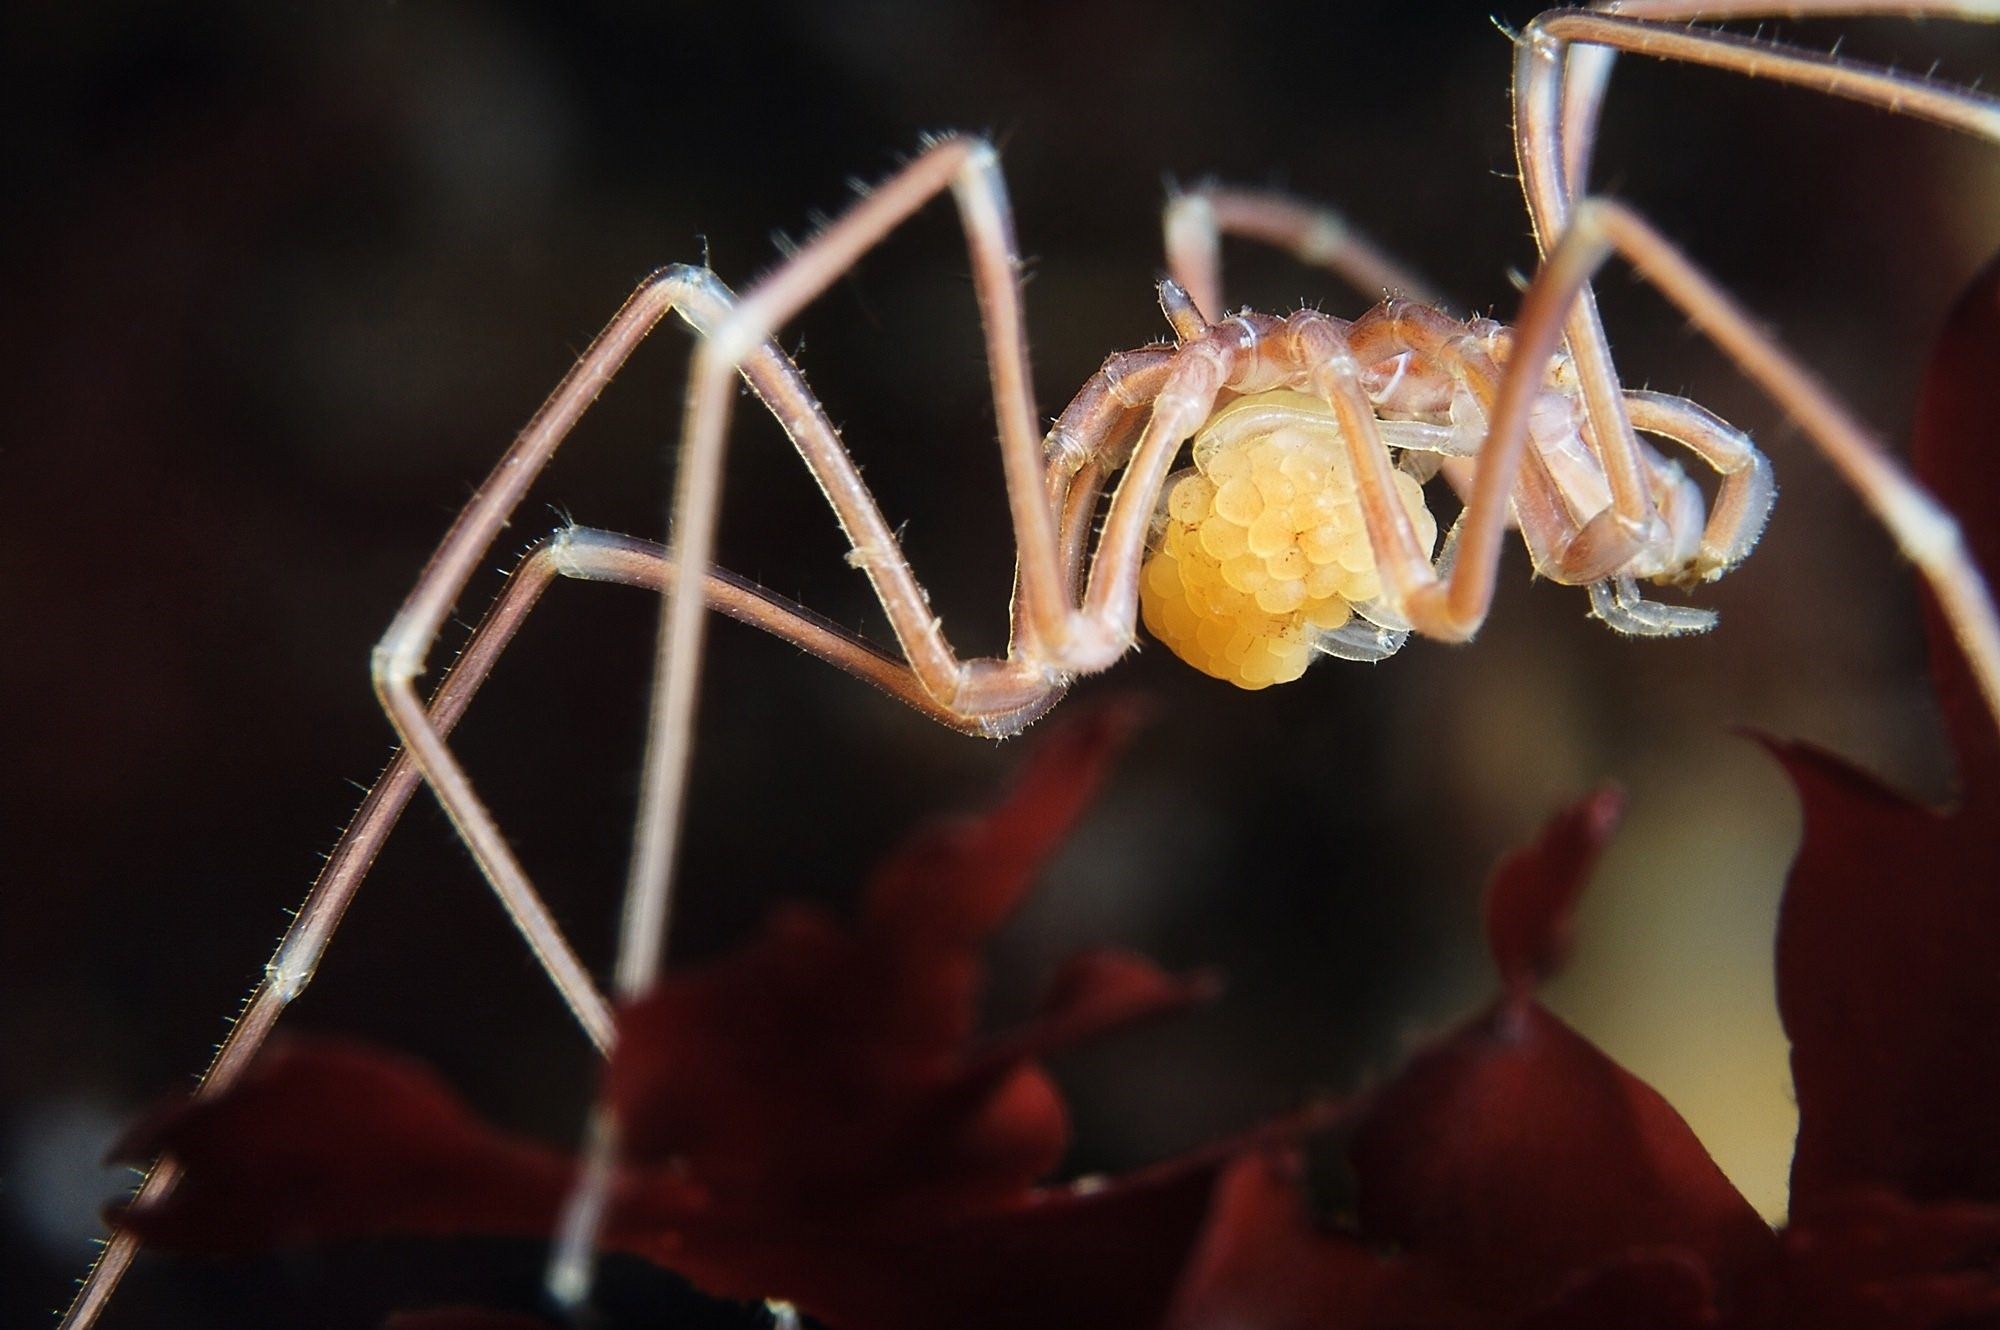 Фото морского паука